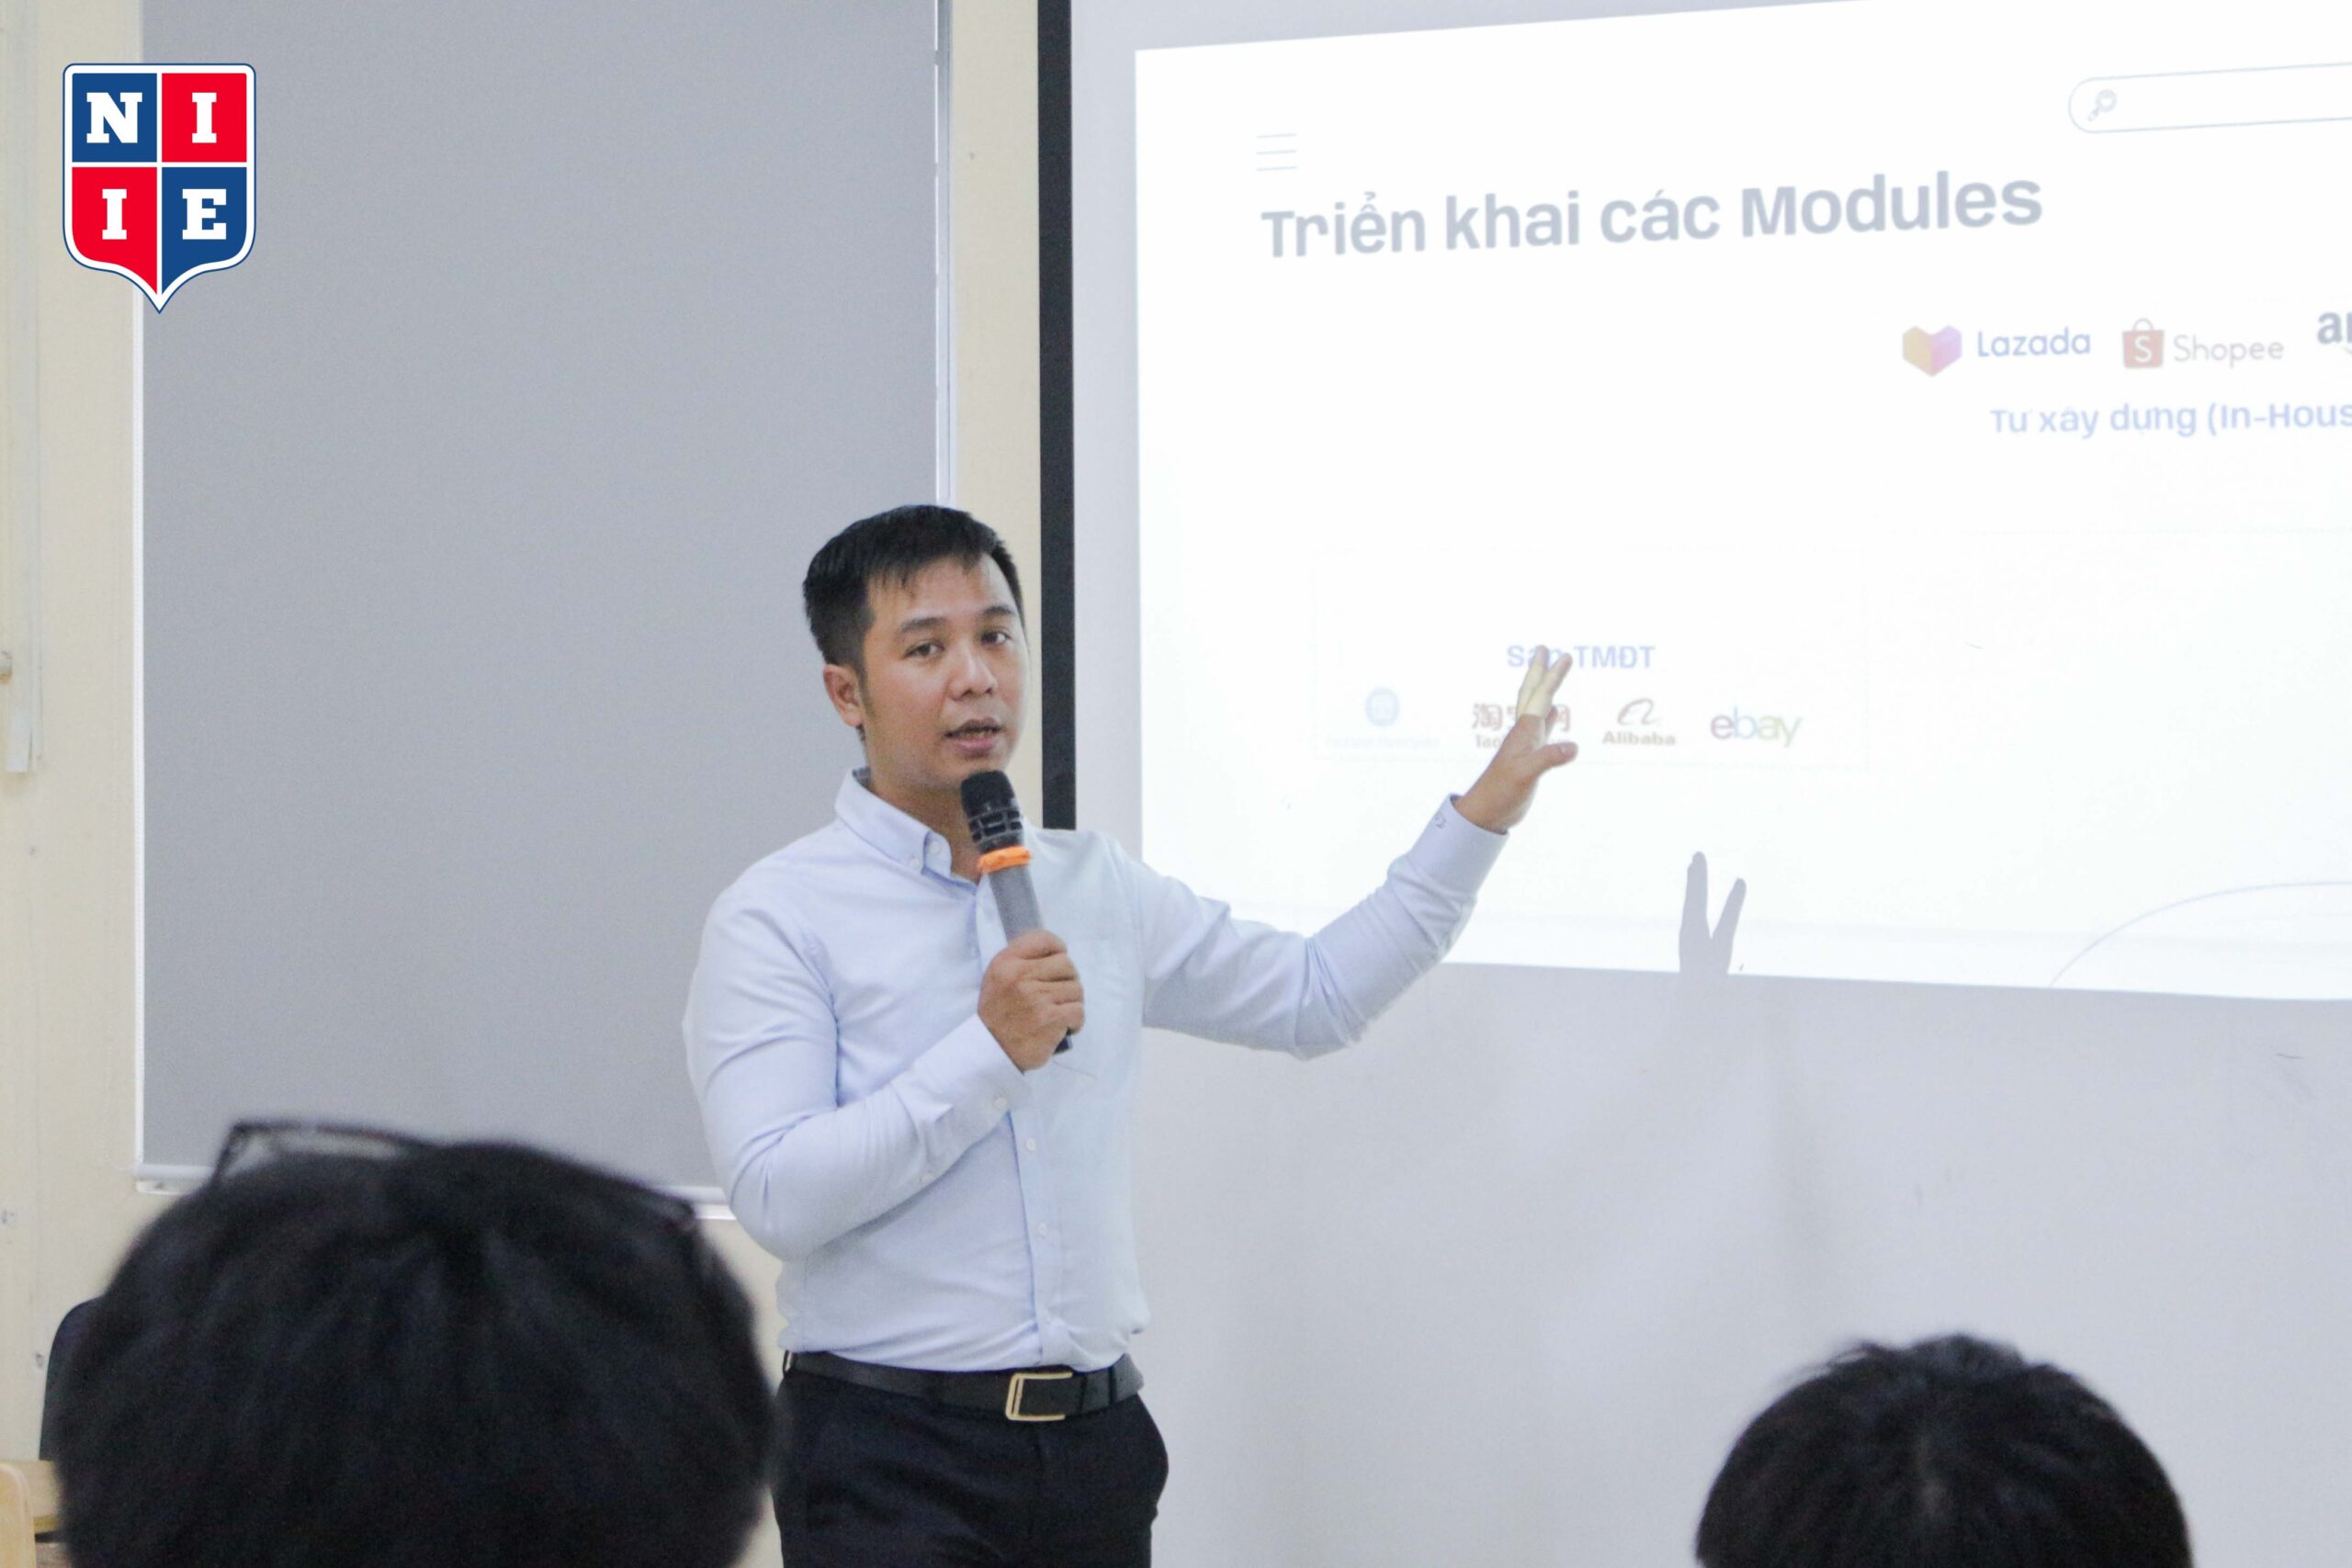 ThS. Nguyễn Hoàng Minh đã có hơn 6 năm kinh nghiệm trong mảng gia công phần mềm và 12 năm kinh nghiệm trong lĩnh vực vận hành và phát triển hệ thống Ecommerce.